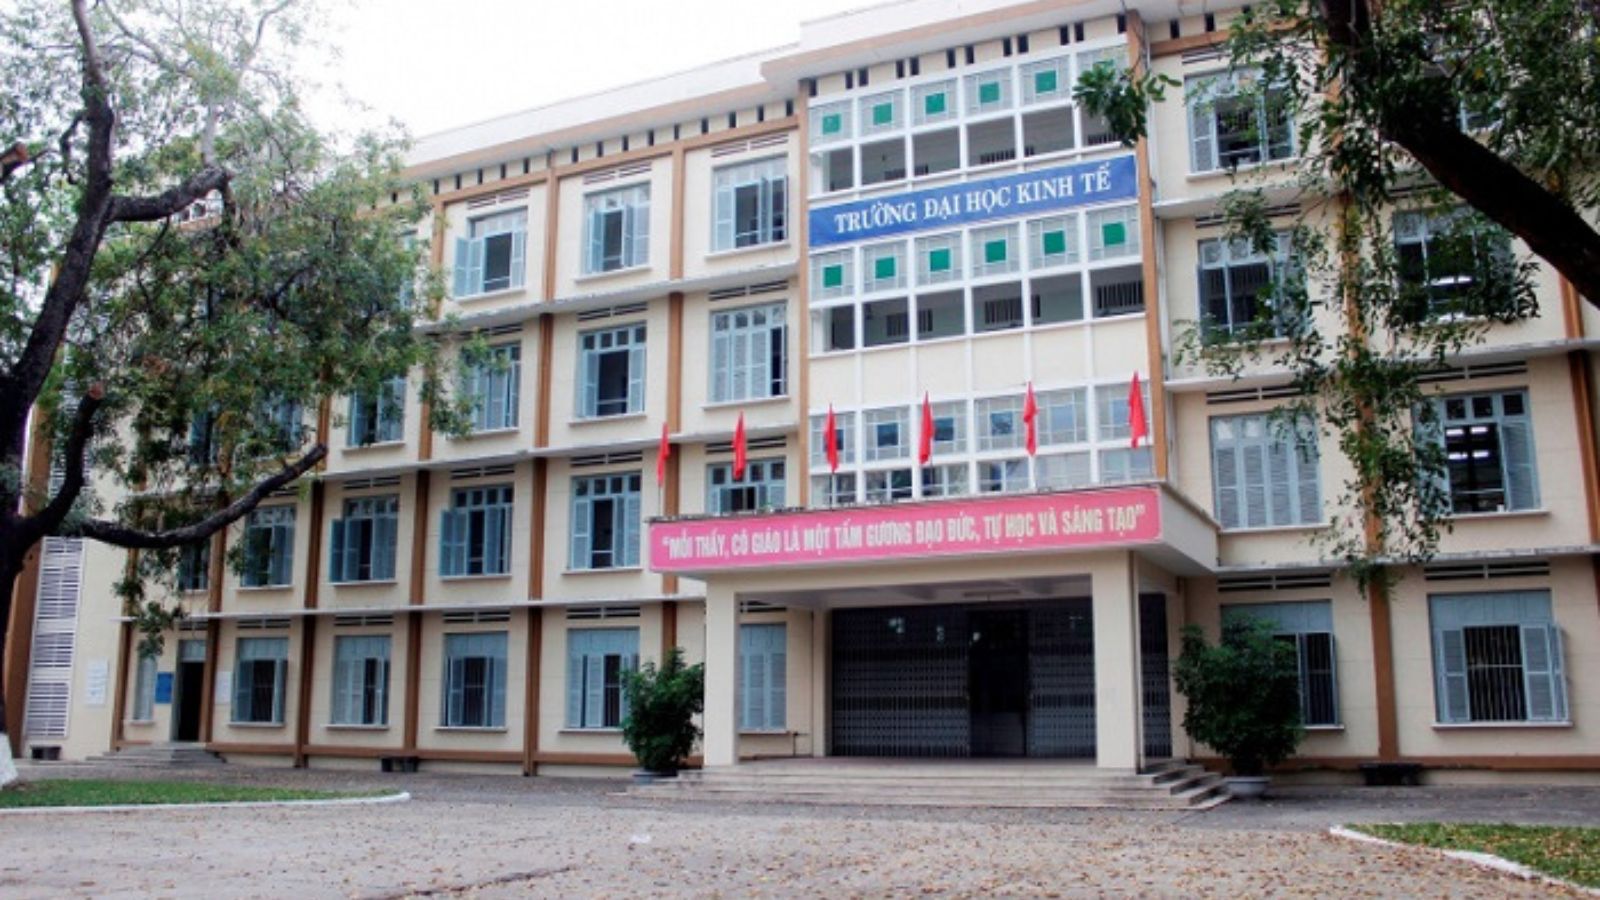 Danh sách các trường đại học ở Đà Nẵng chất lượng – 5 Tiêu chí chọn trường đại học Đà Nẵng nên biết